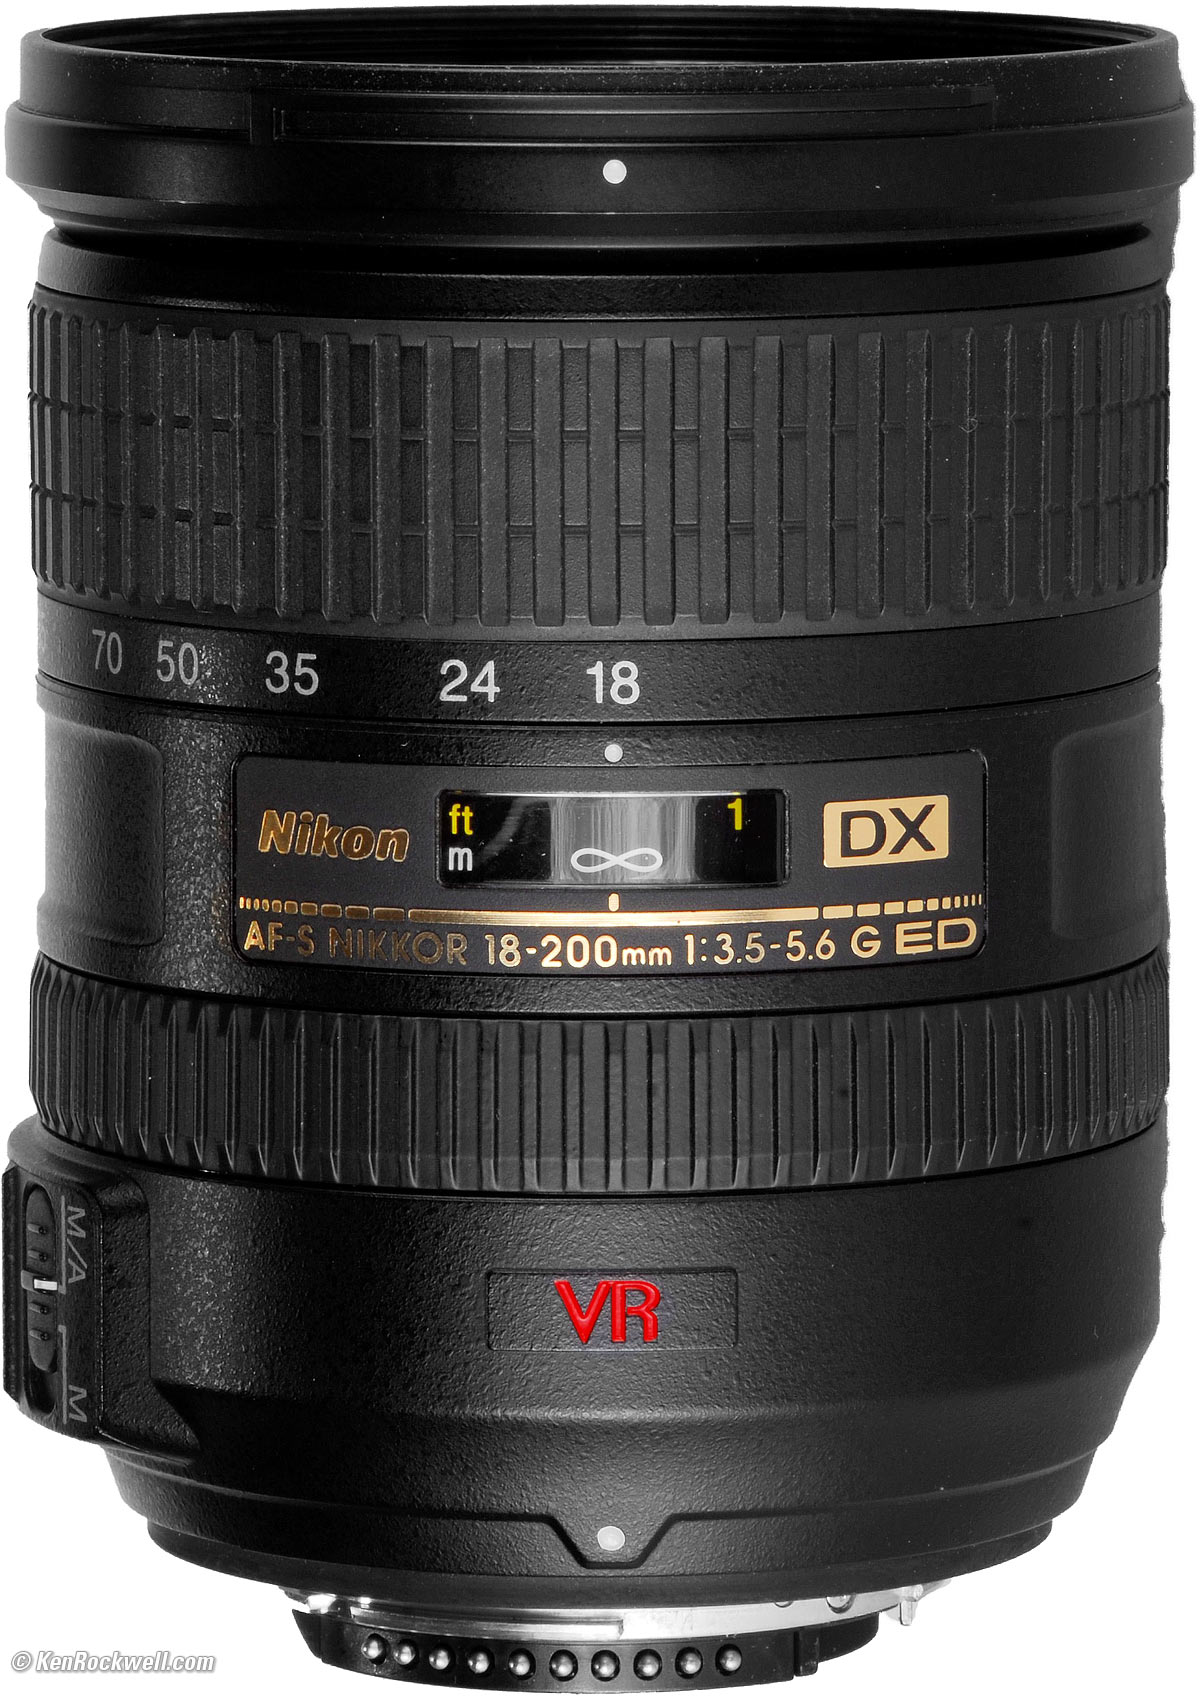 Nikon 18-200mm f/3.5-5.6 G ED VR II